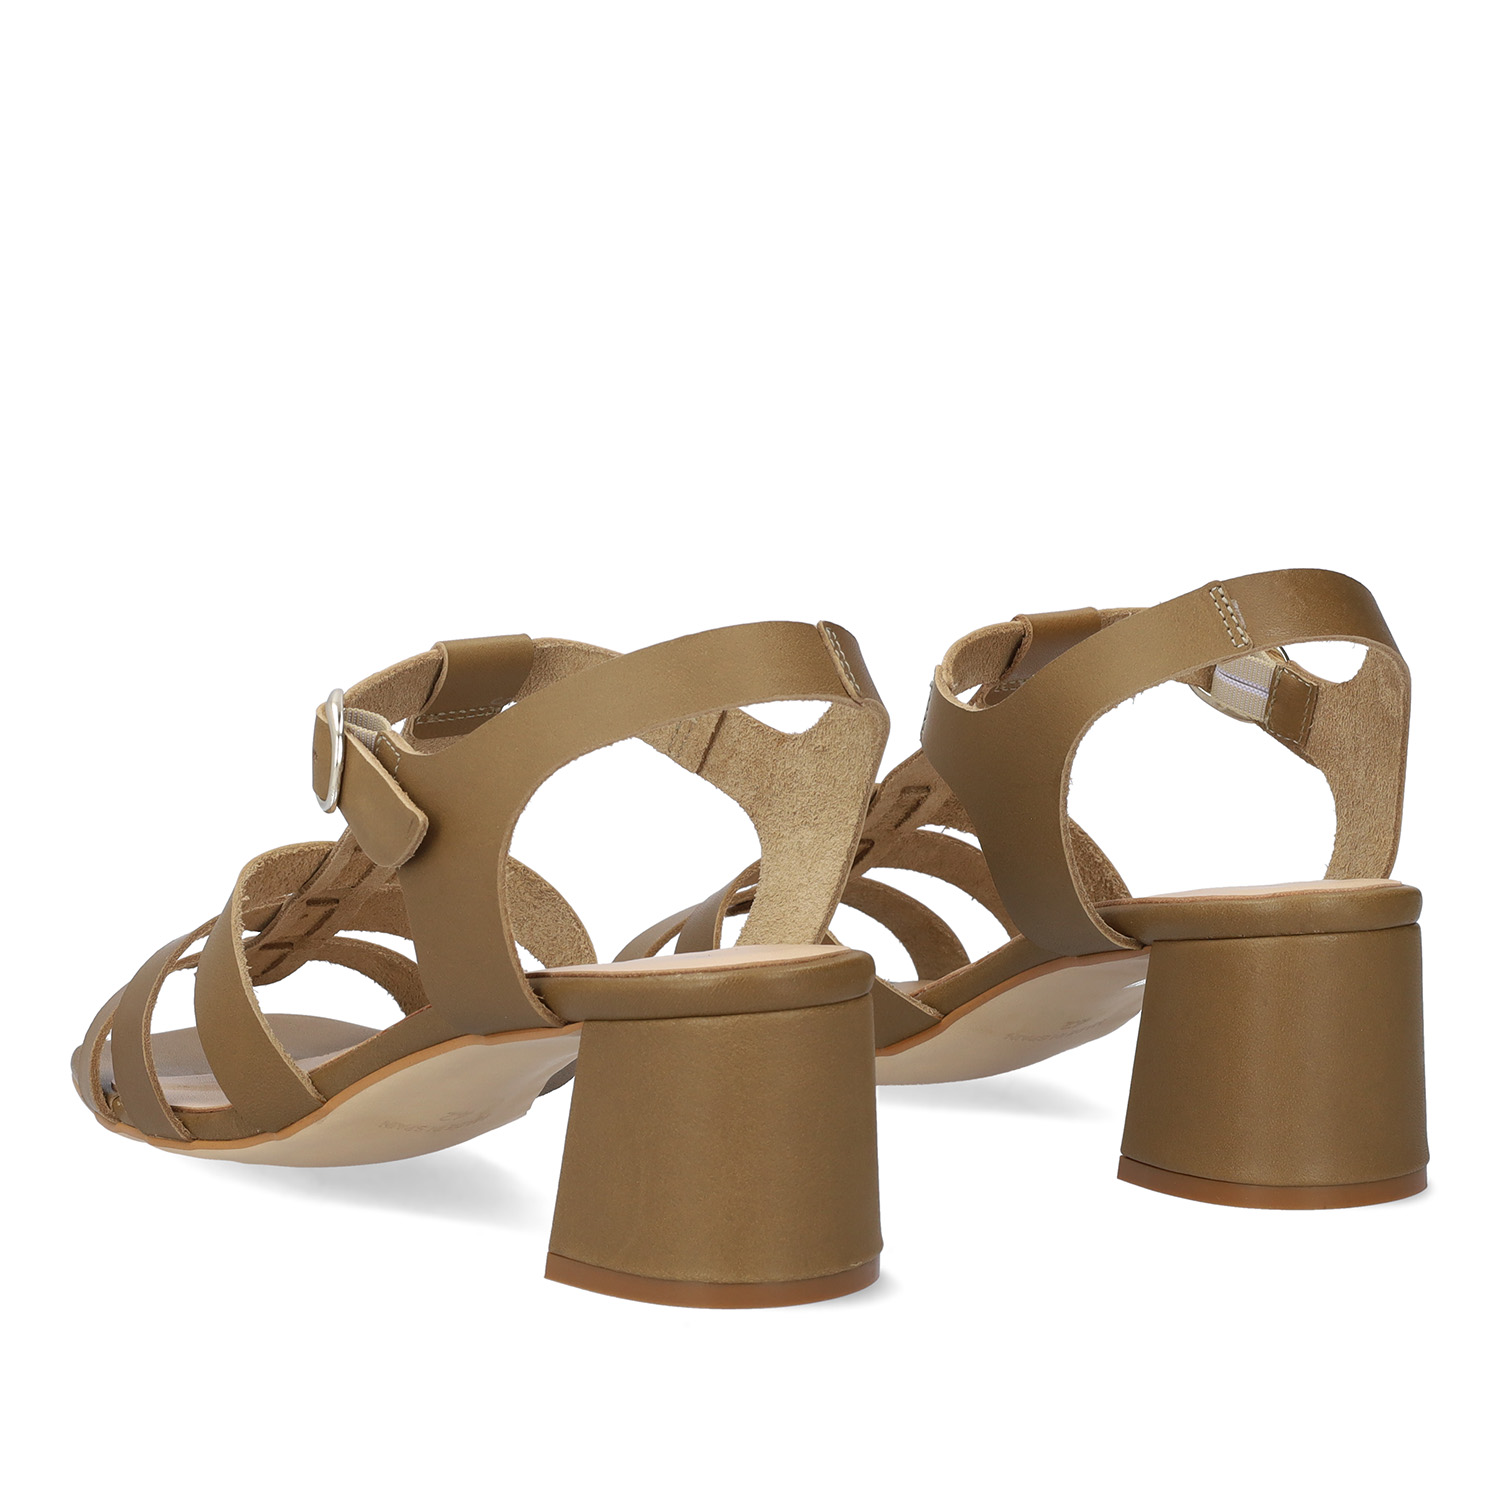 Kaki leather heeled sandals 